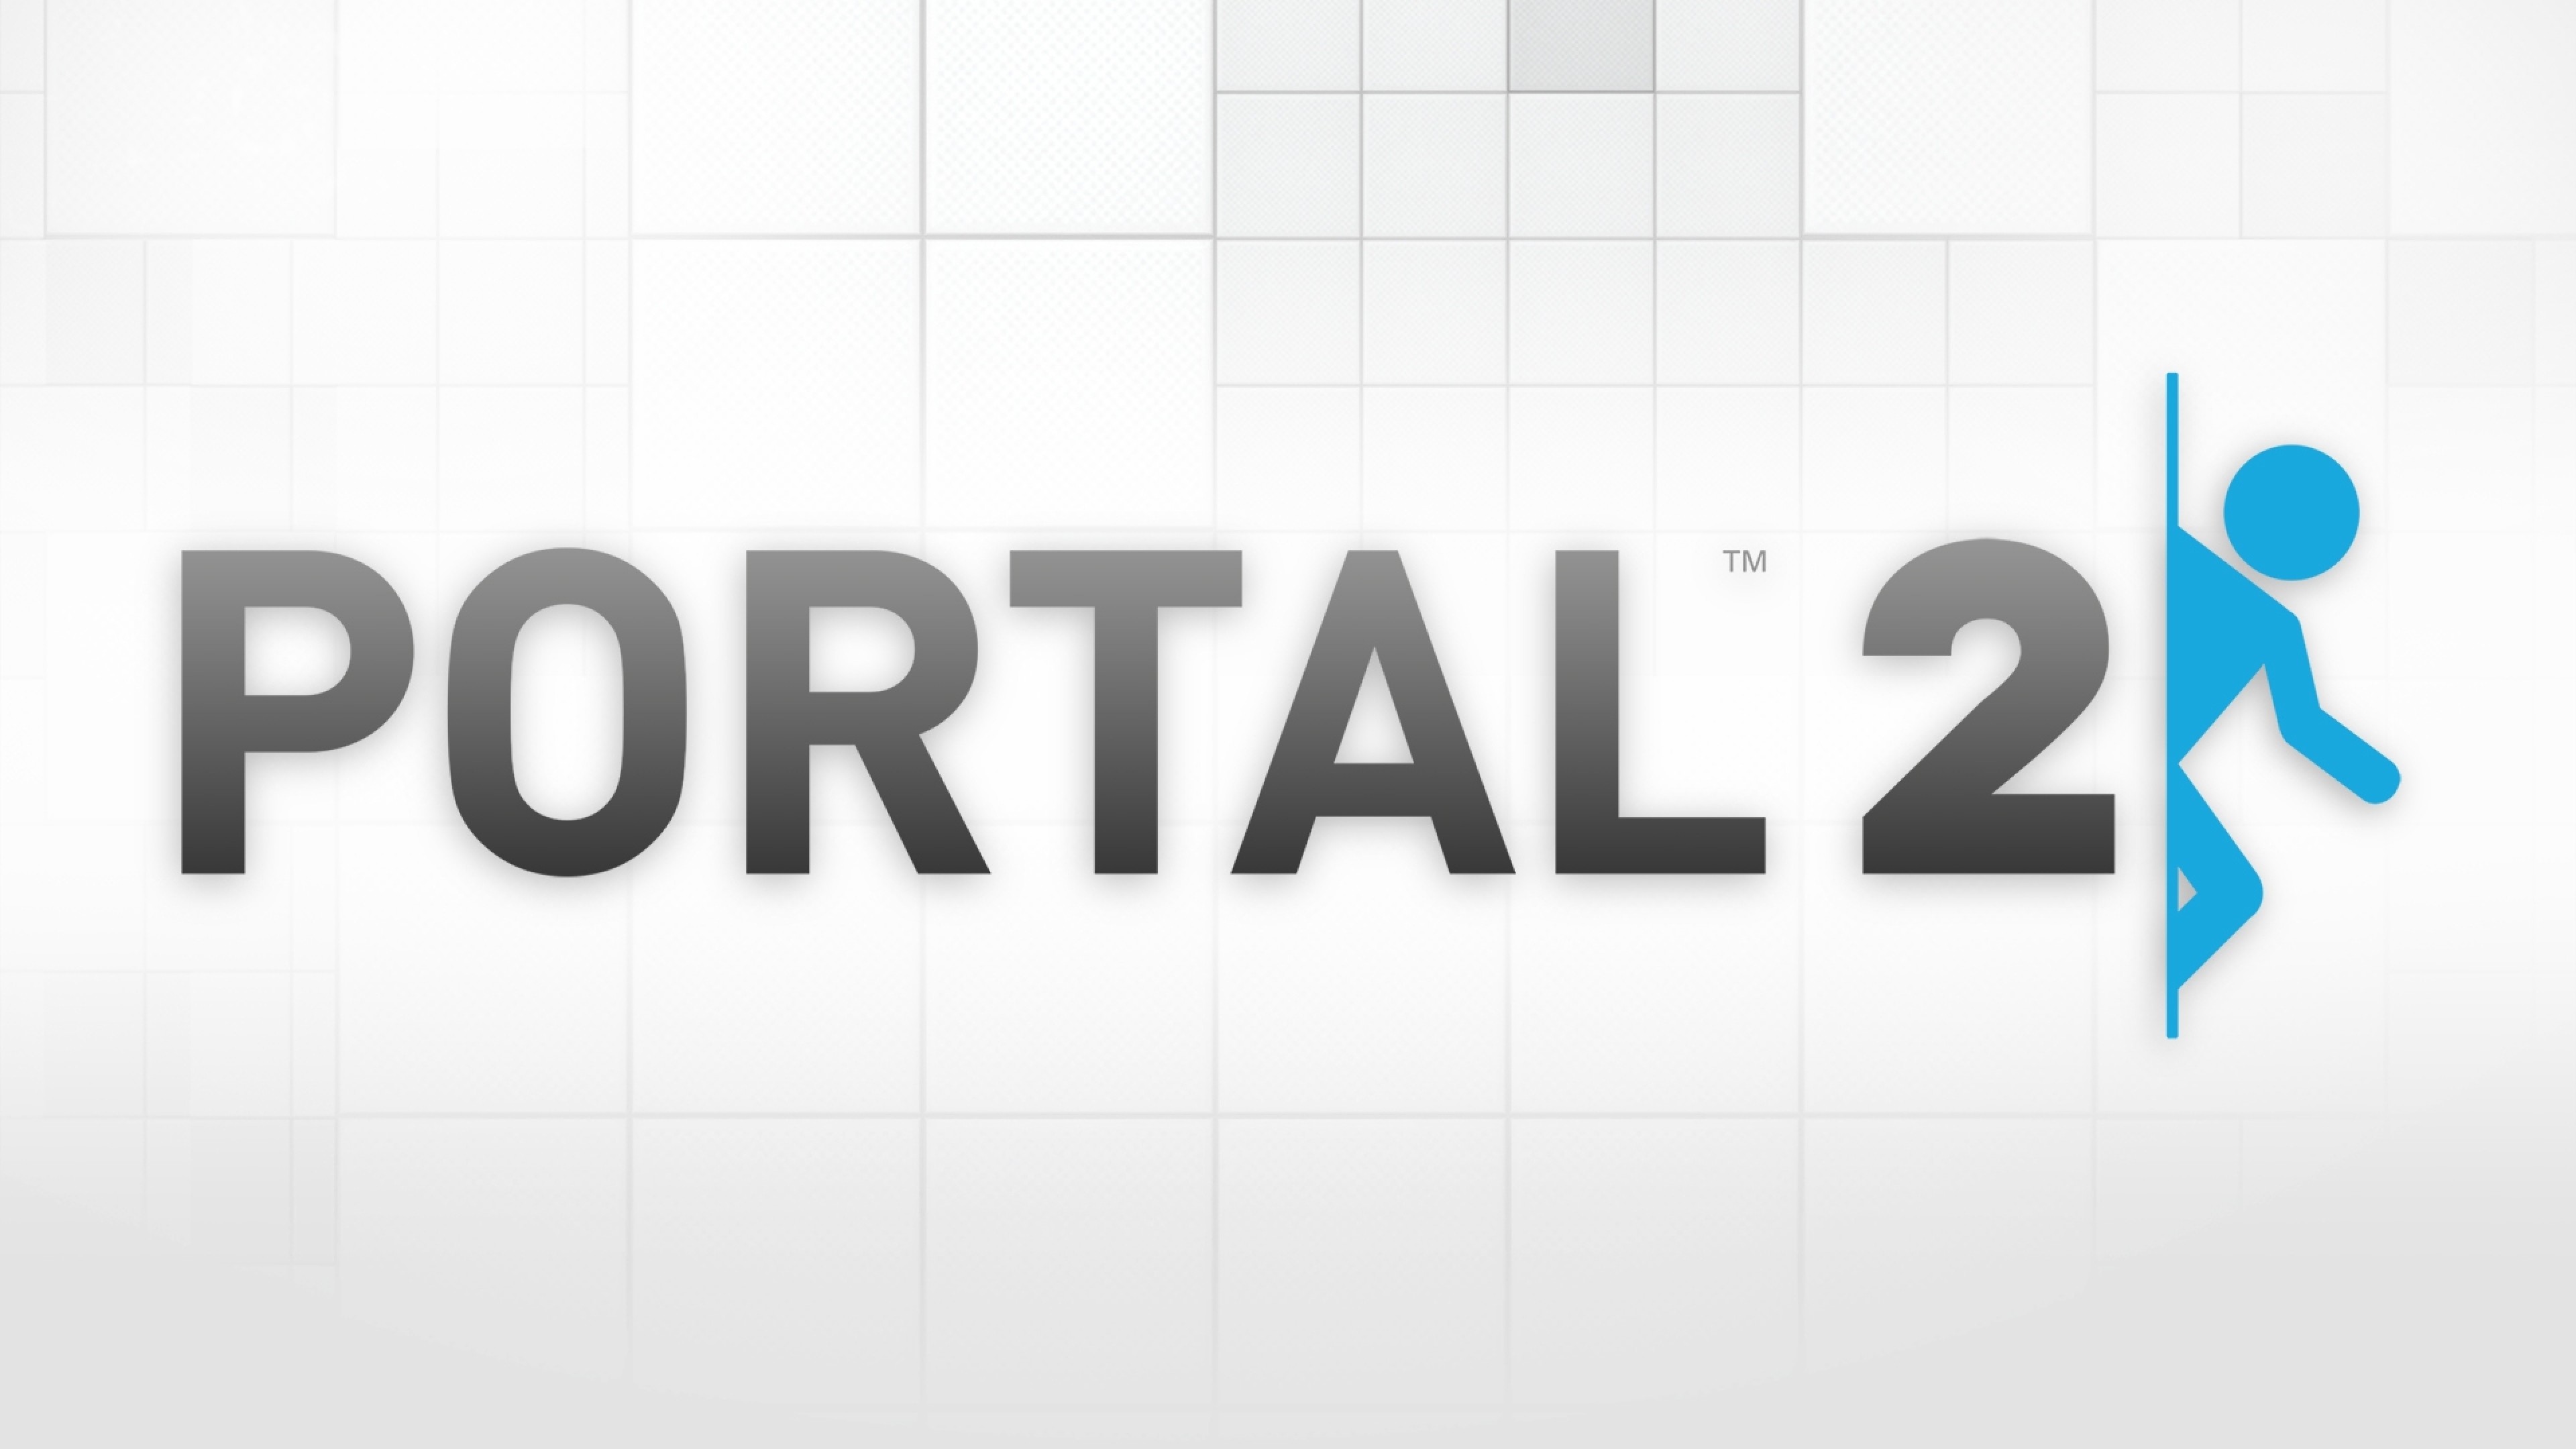 Preview portal 2